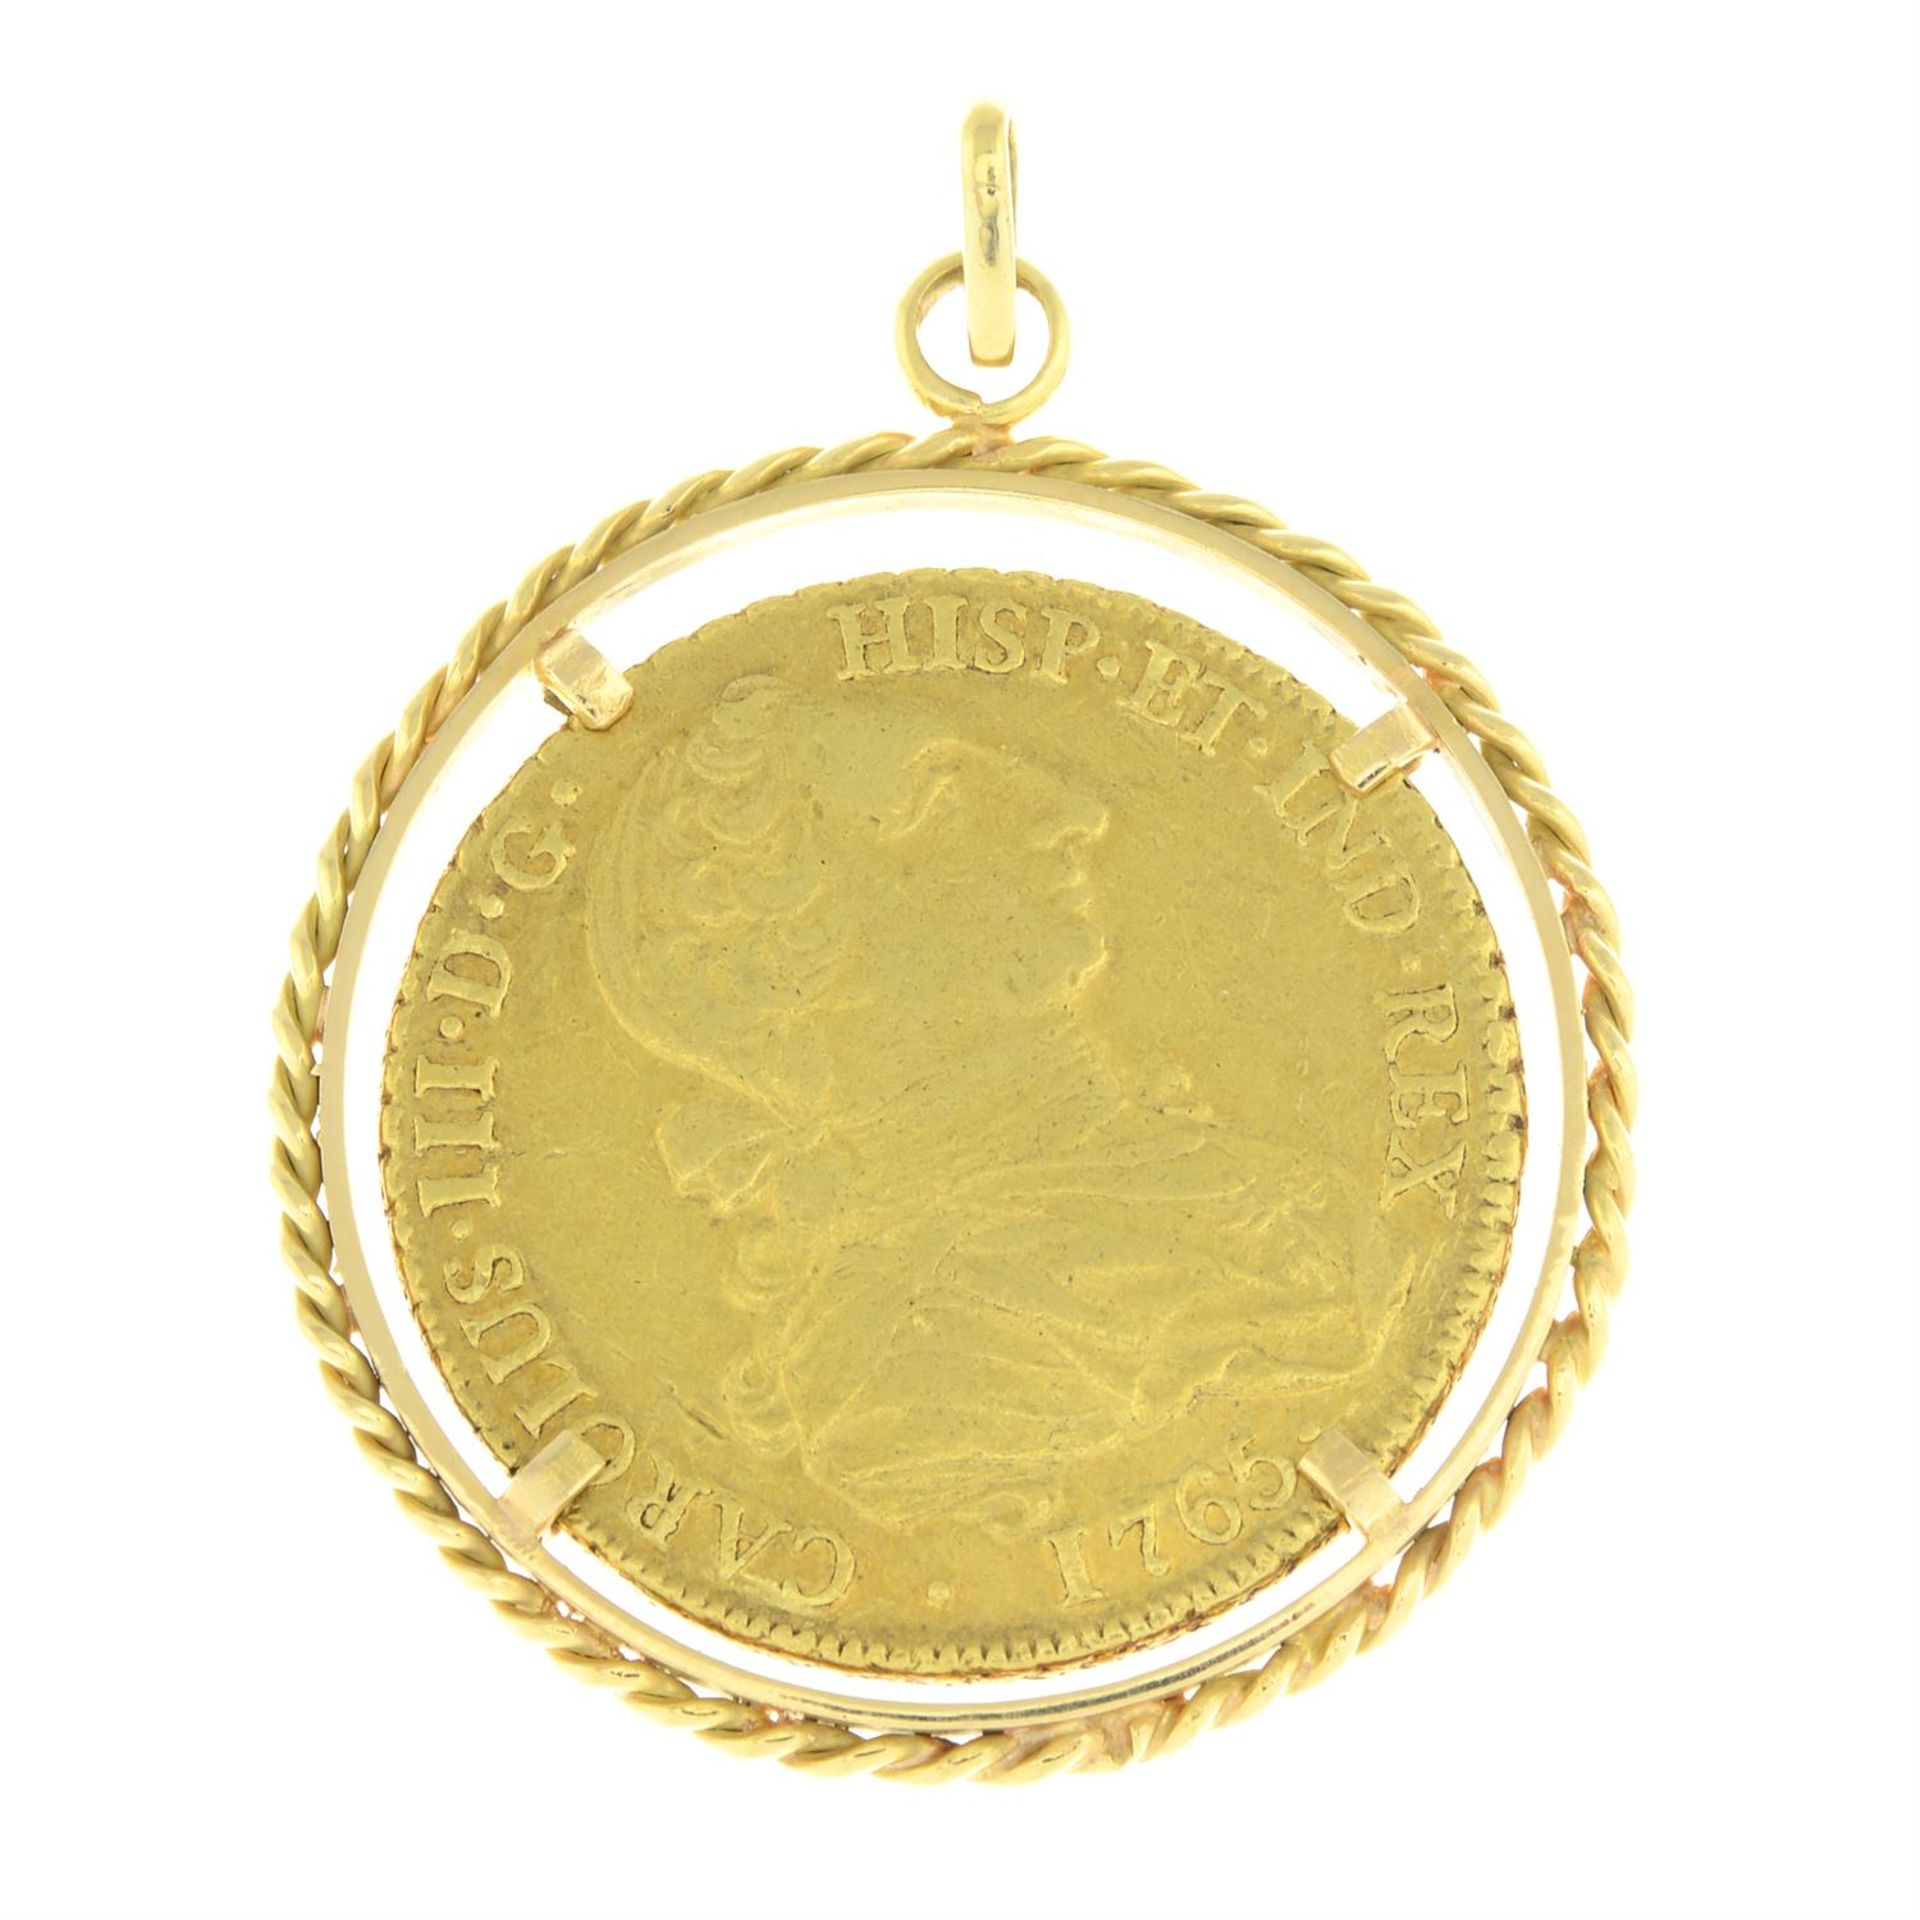 Mexico, Charles III, gold 8-Escudos 1765.